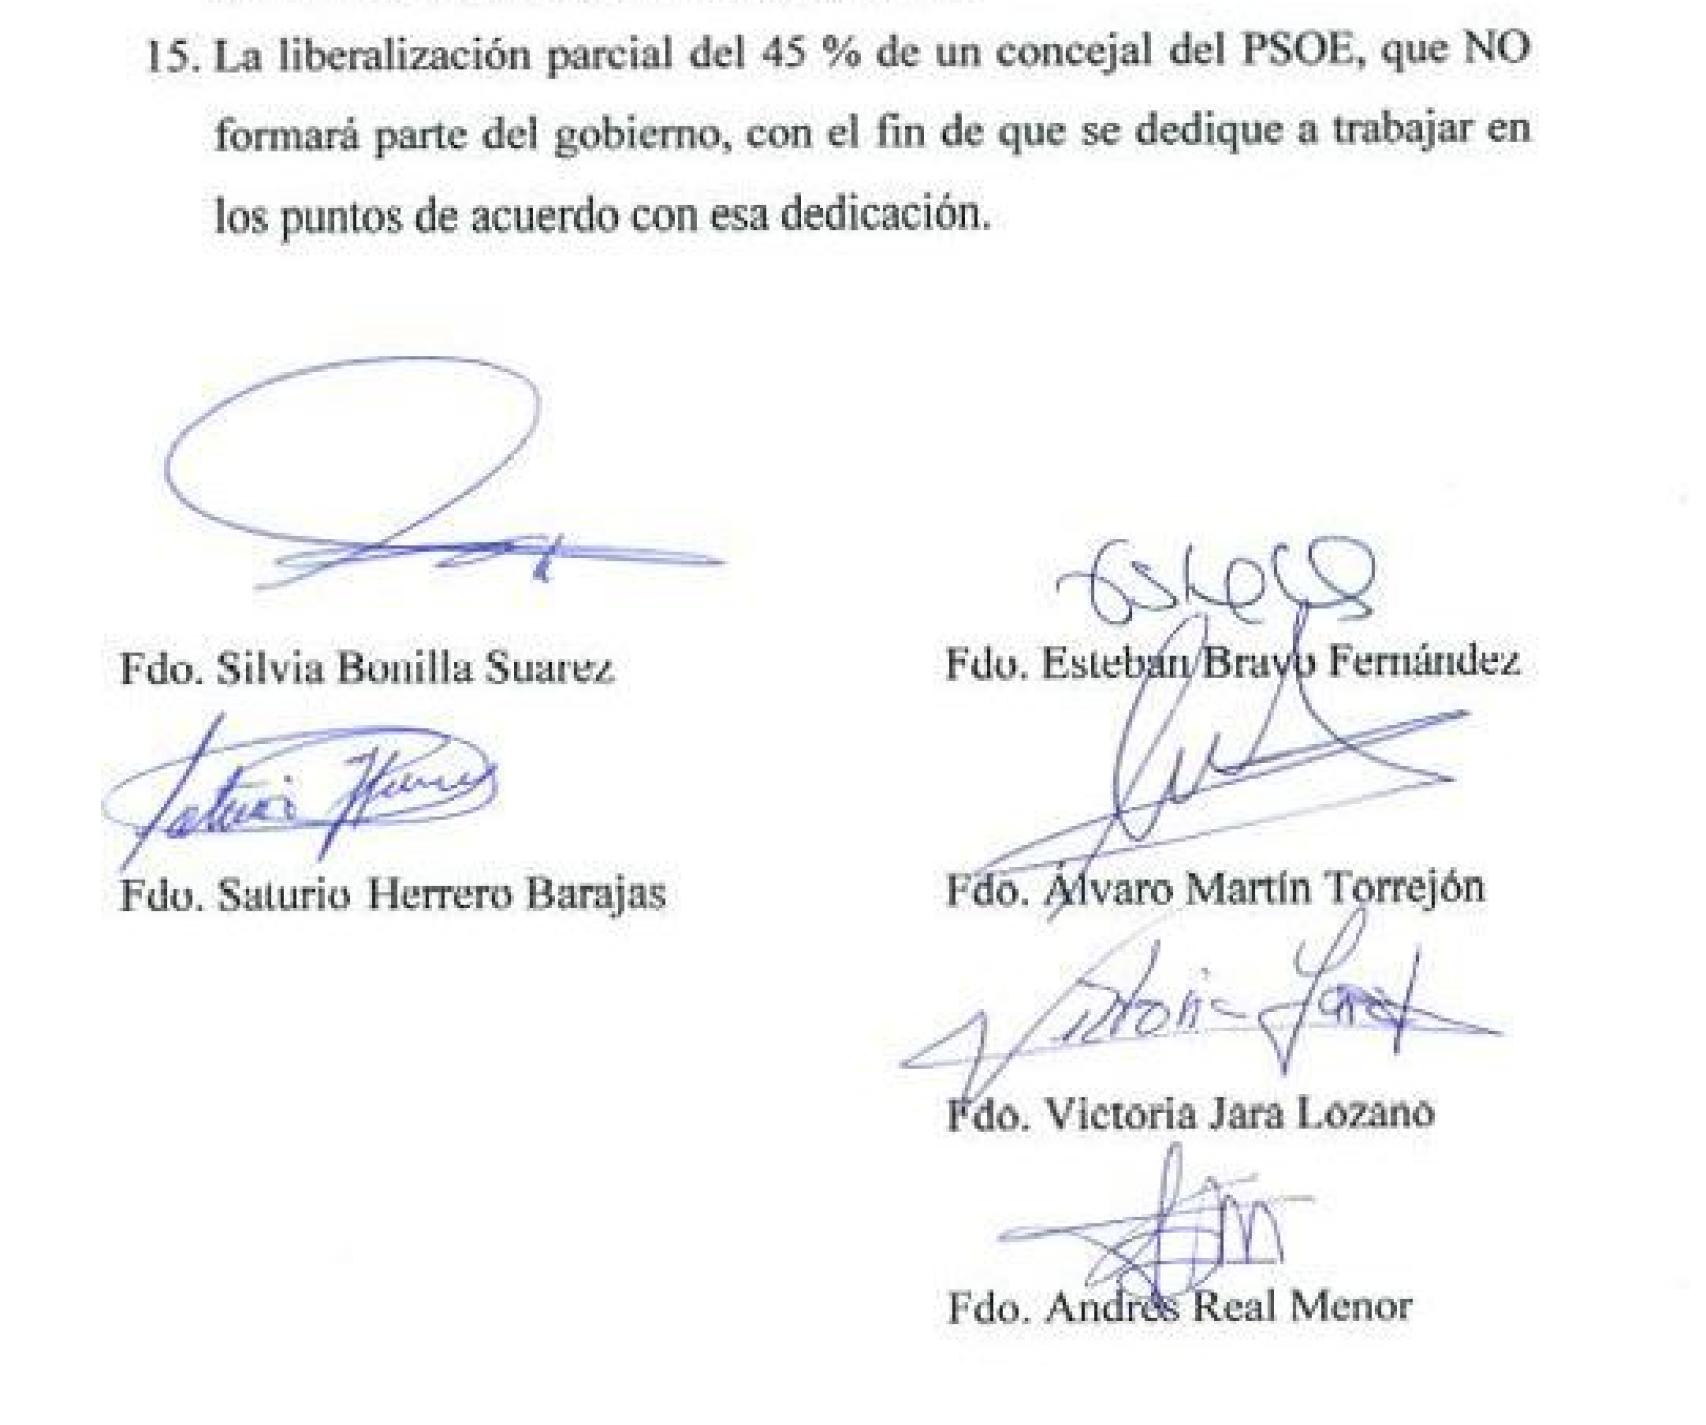 Extracto del acuerdo de estabilidad firmado por los concejales populares y socialistas.